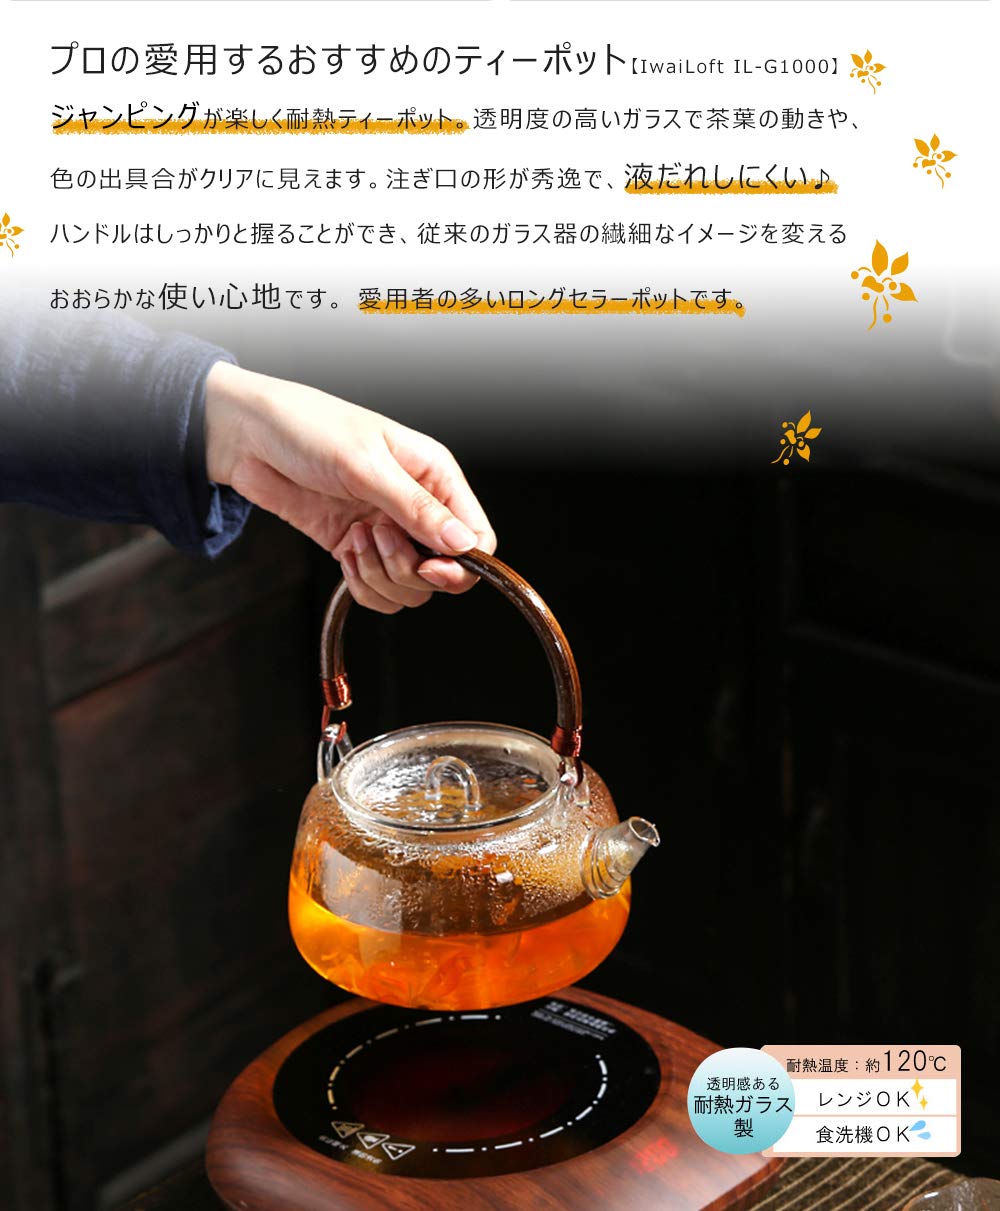 IwaiLoft 手作り 耐熱ガラス ティーポット 茶こし付き ガラス製ポット 木製 竹製 持ち手 ジャンピング 紅茶ポット フルーツティー リーフティー 花茶 工芸茶 ハーフティー に 直火可 大容量 IL-G1968 (平丸, 500mL-1000mL)